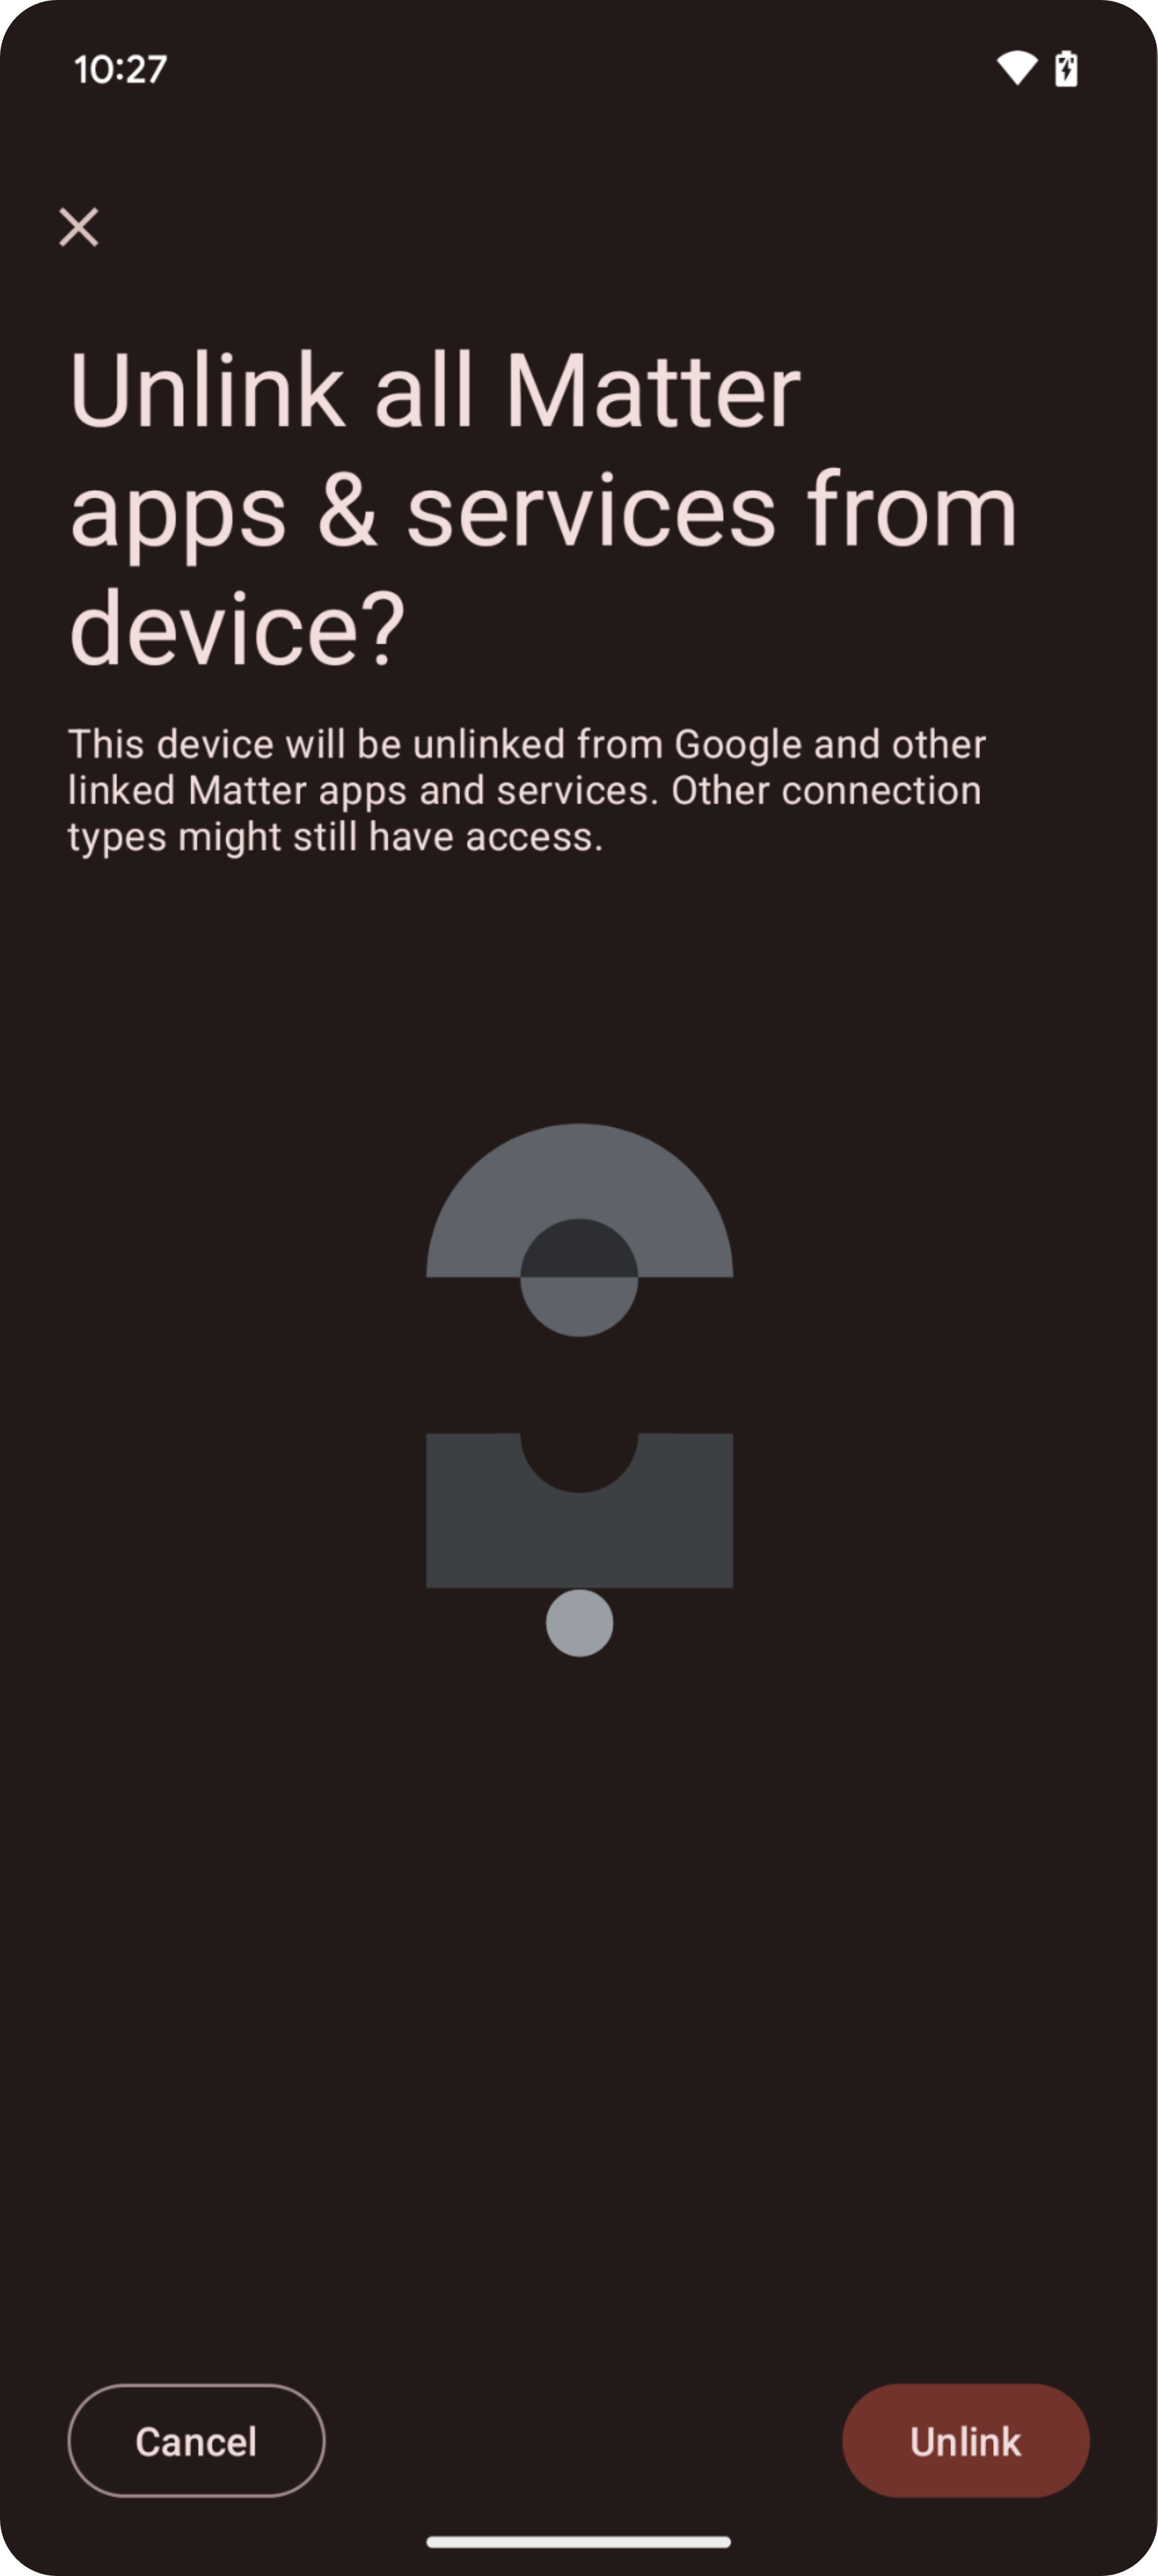 यह डायग्राम Google Home Playground में सुझाव देने और समस्याओं की शिकायत करने के लिए,
       आइकॉन दिखाता है.